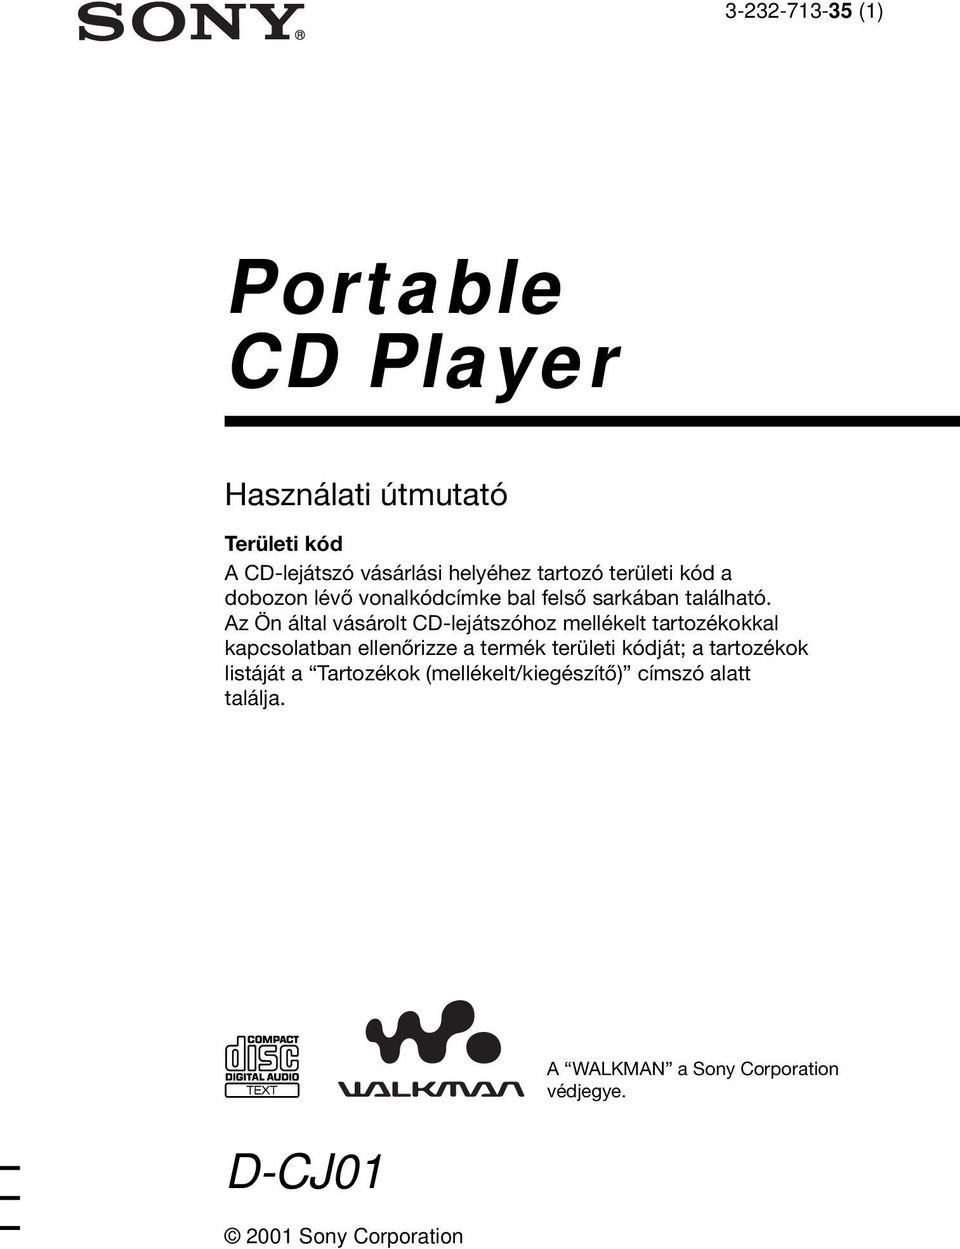 Az Ön által vásárolt CD-lejátszóhoz mellékelt tartozékokkal kapcsolatban ellenőrizze a termék területi